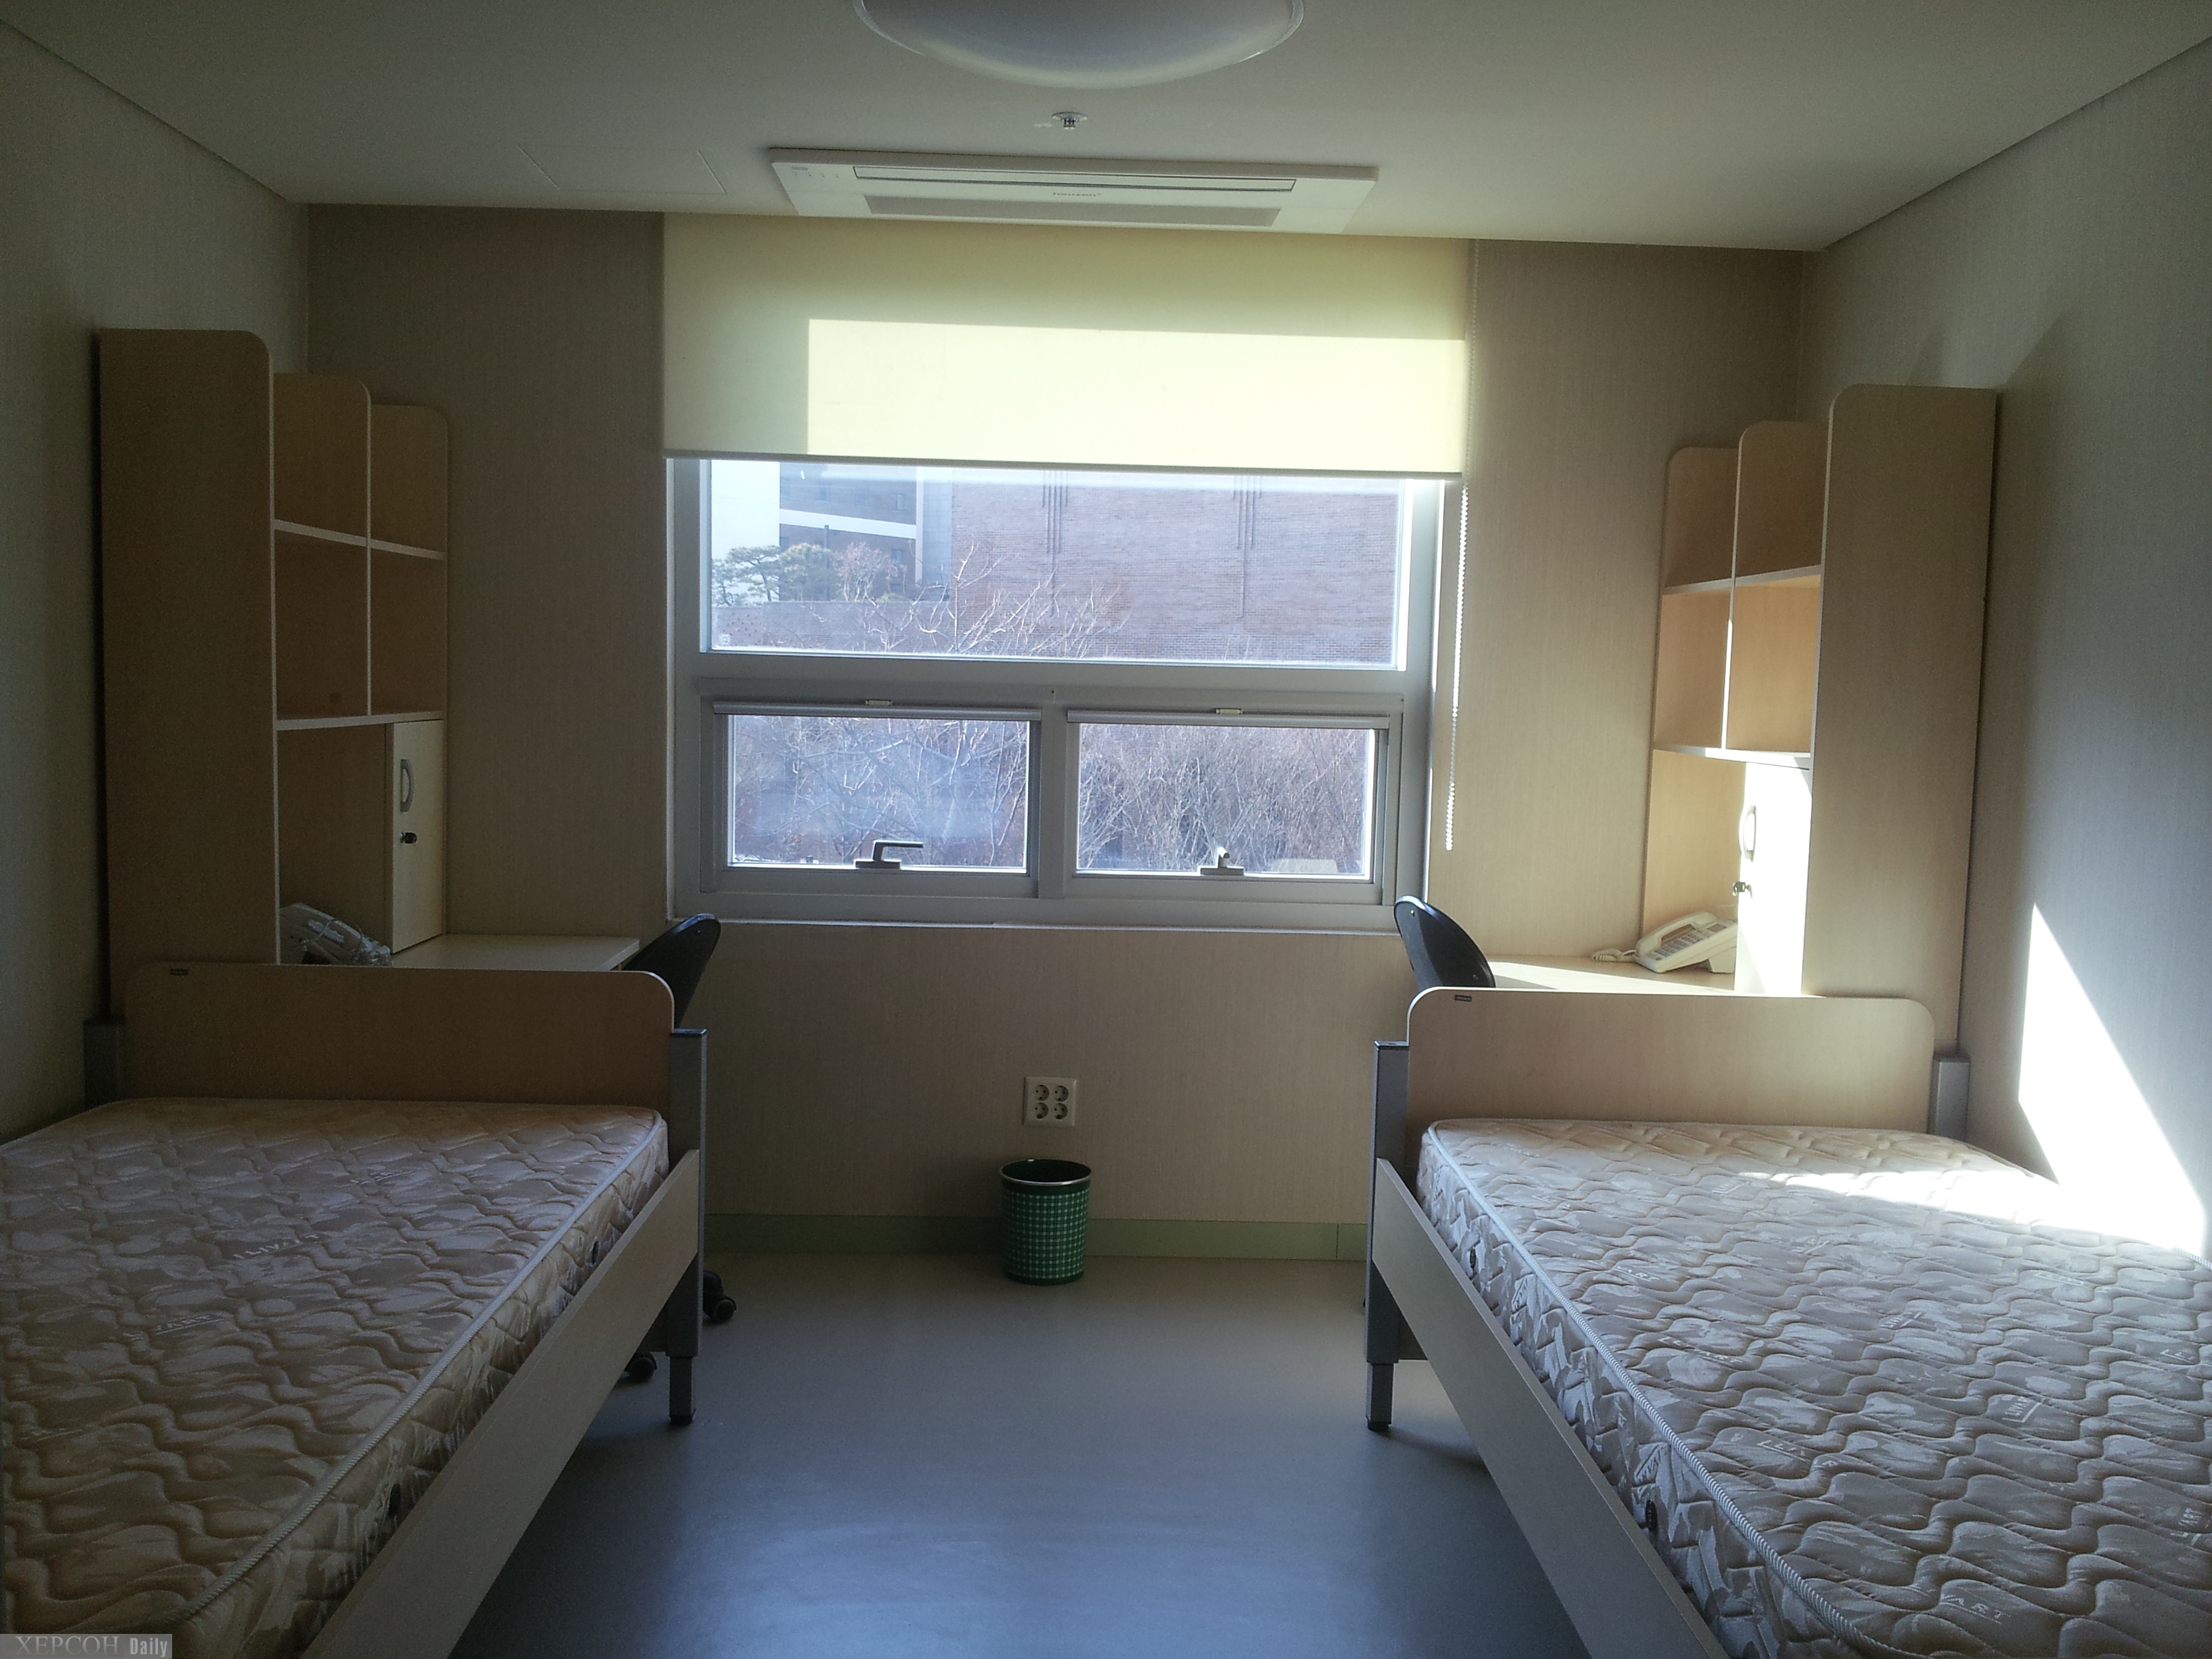 Жилая комната в общежитии. Комната в общежитии. Спальня в общежитии. Комната в студенческом общежитии. Комната в общежитии на двоих.